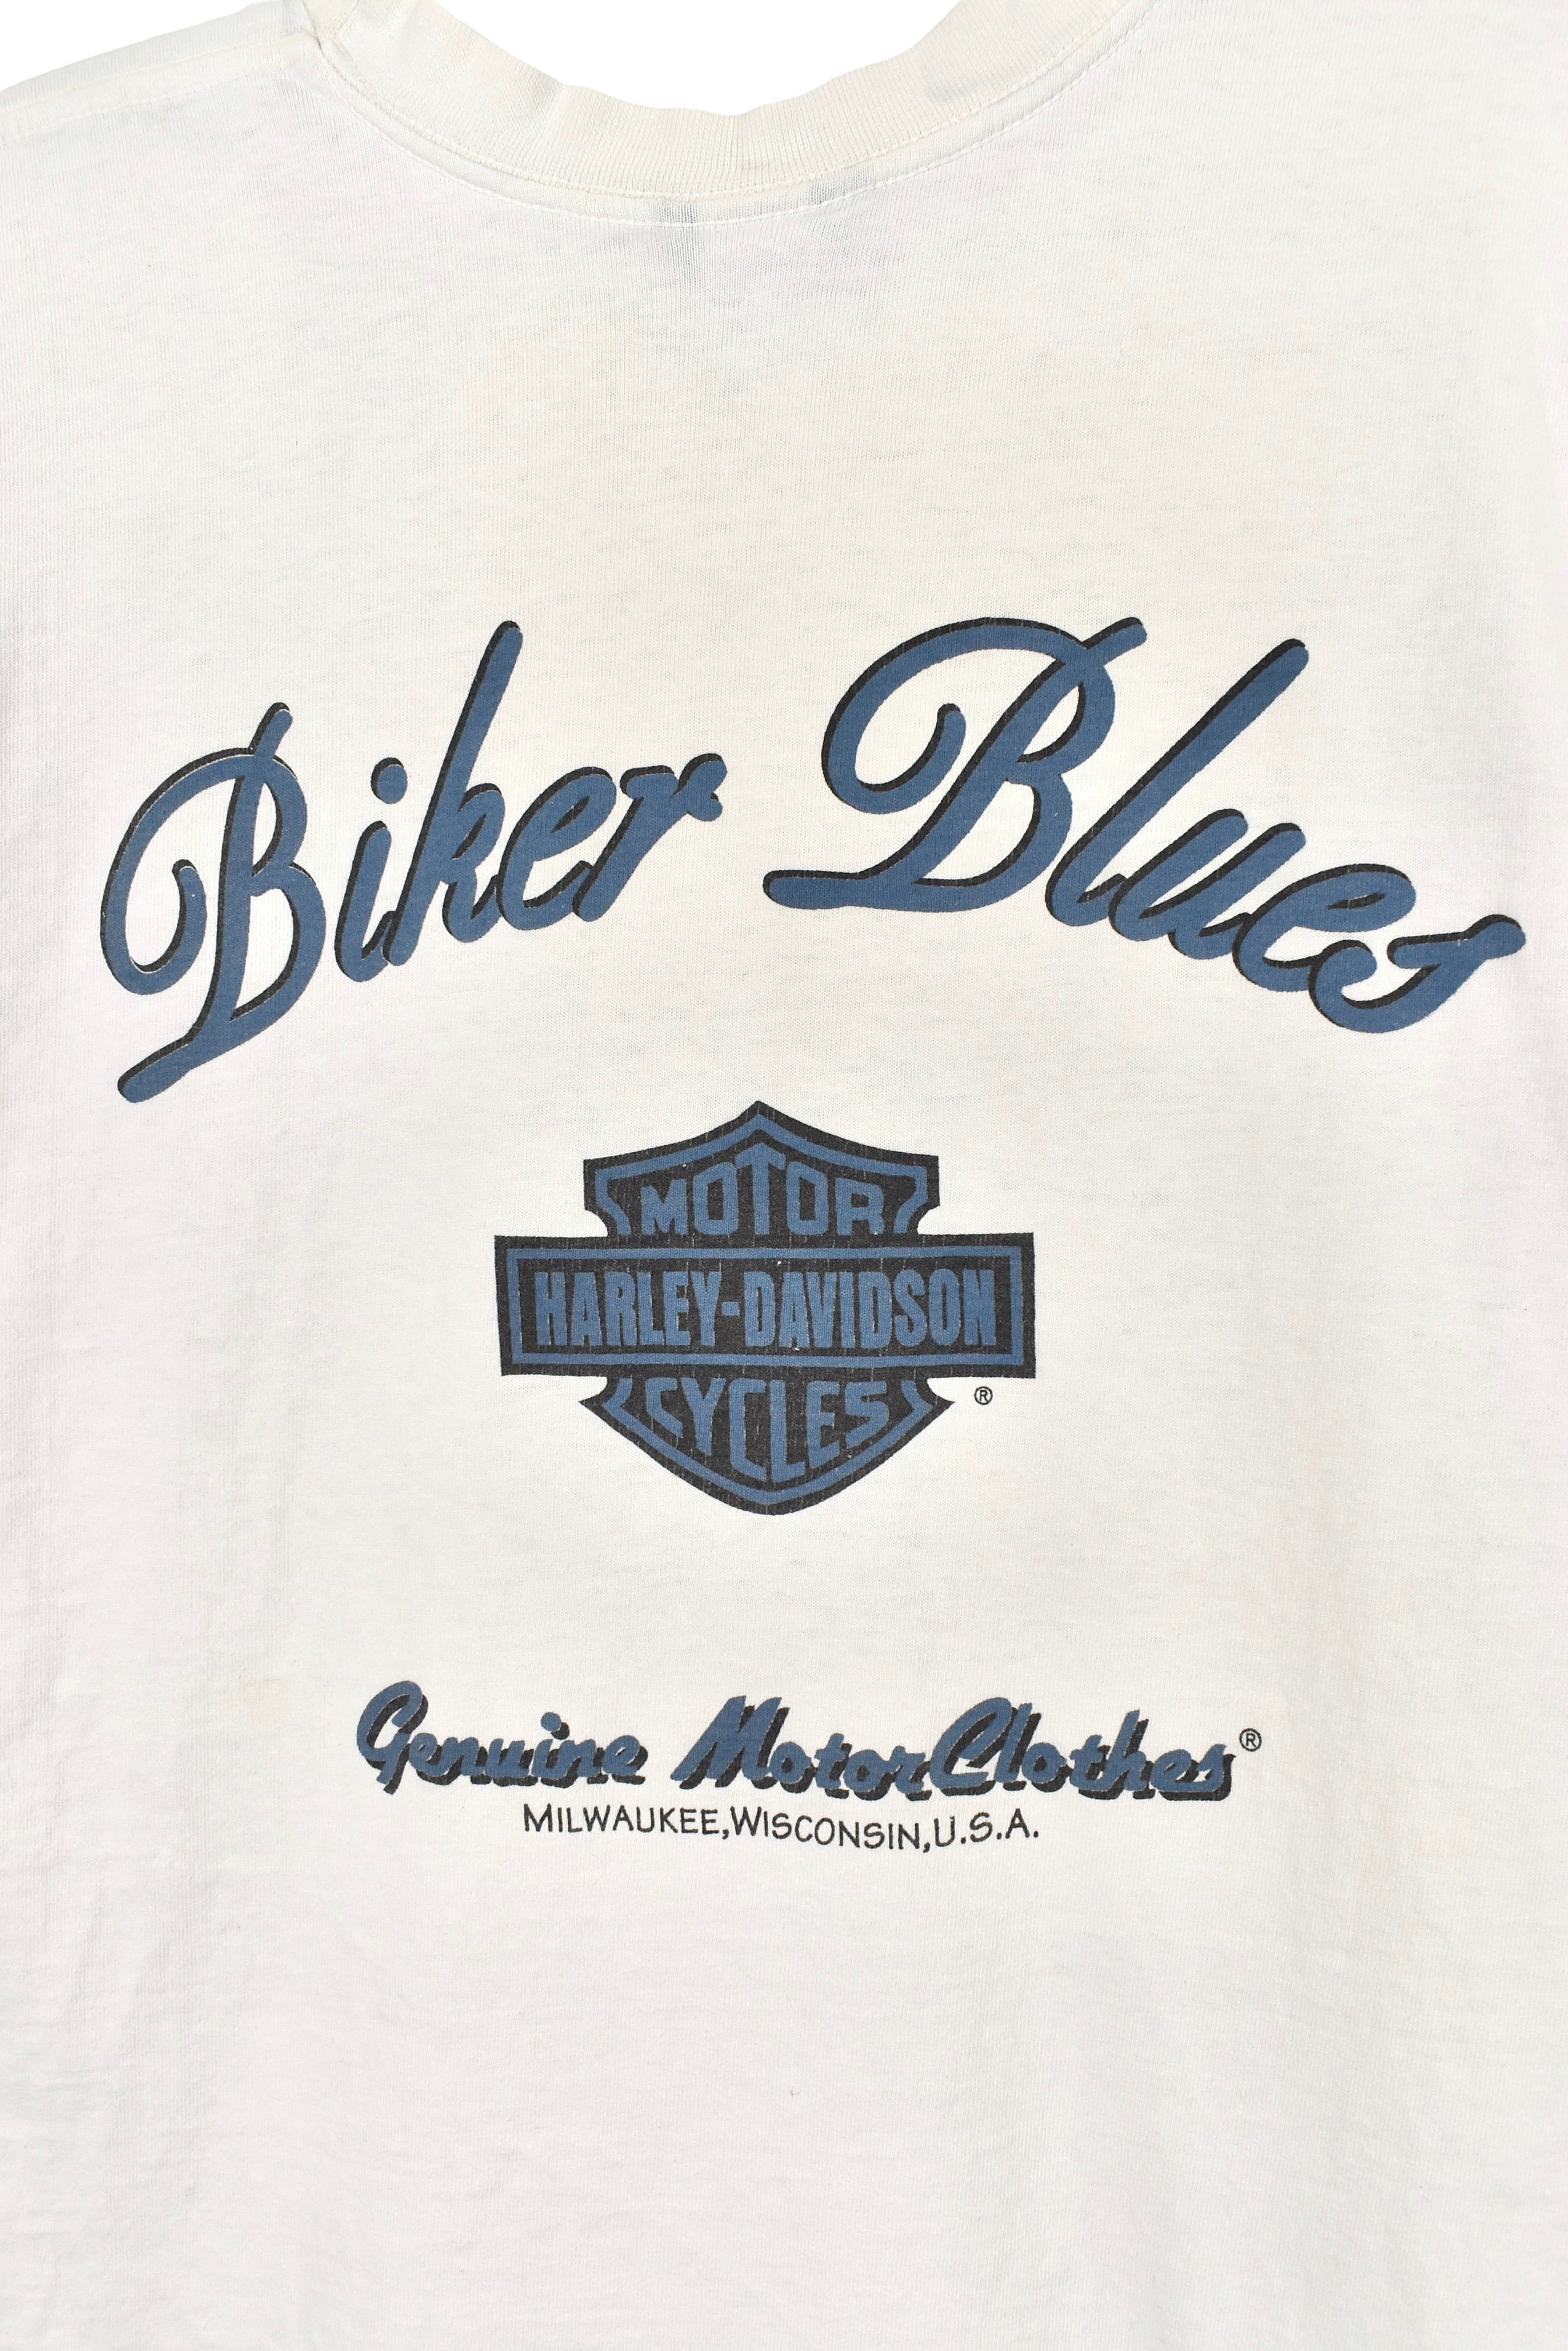 Vintage Harley Davidson shirt, white graphic tee - Large